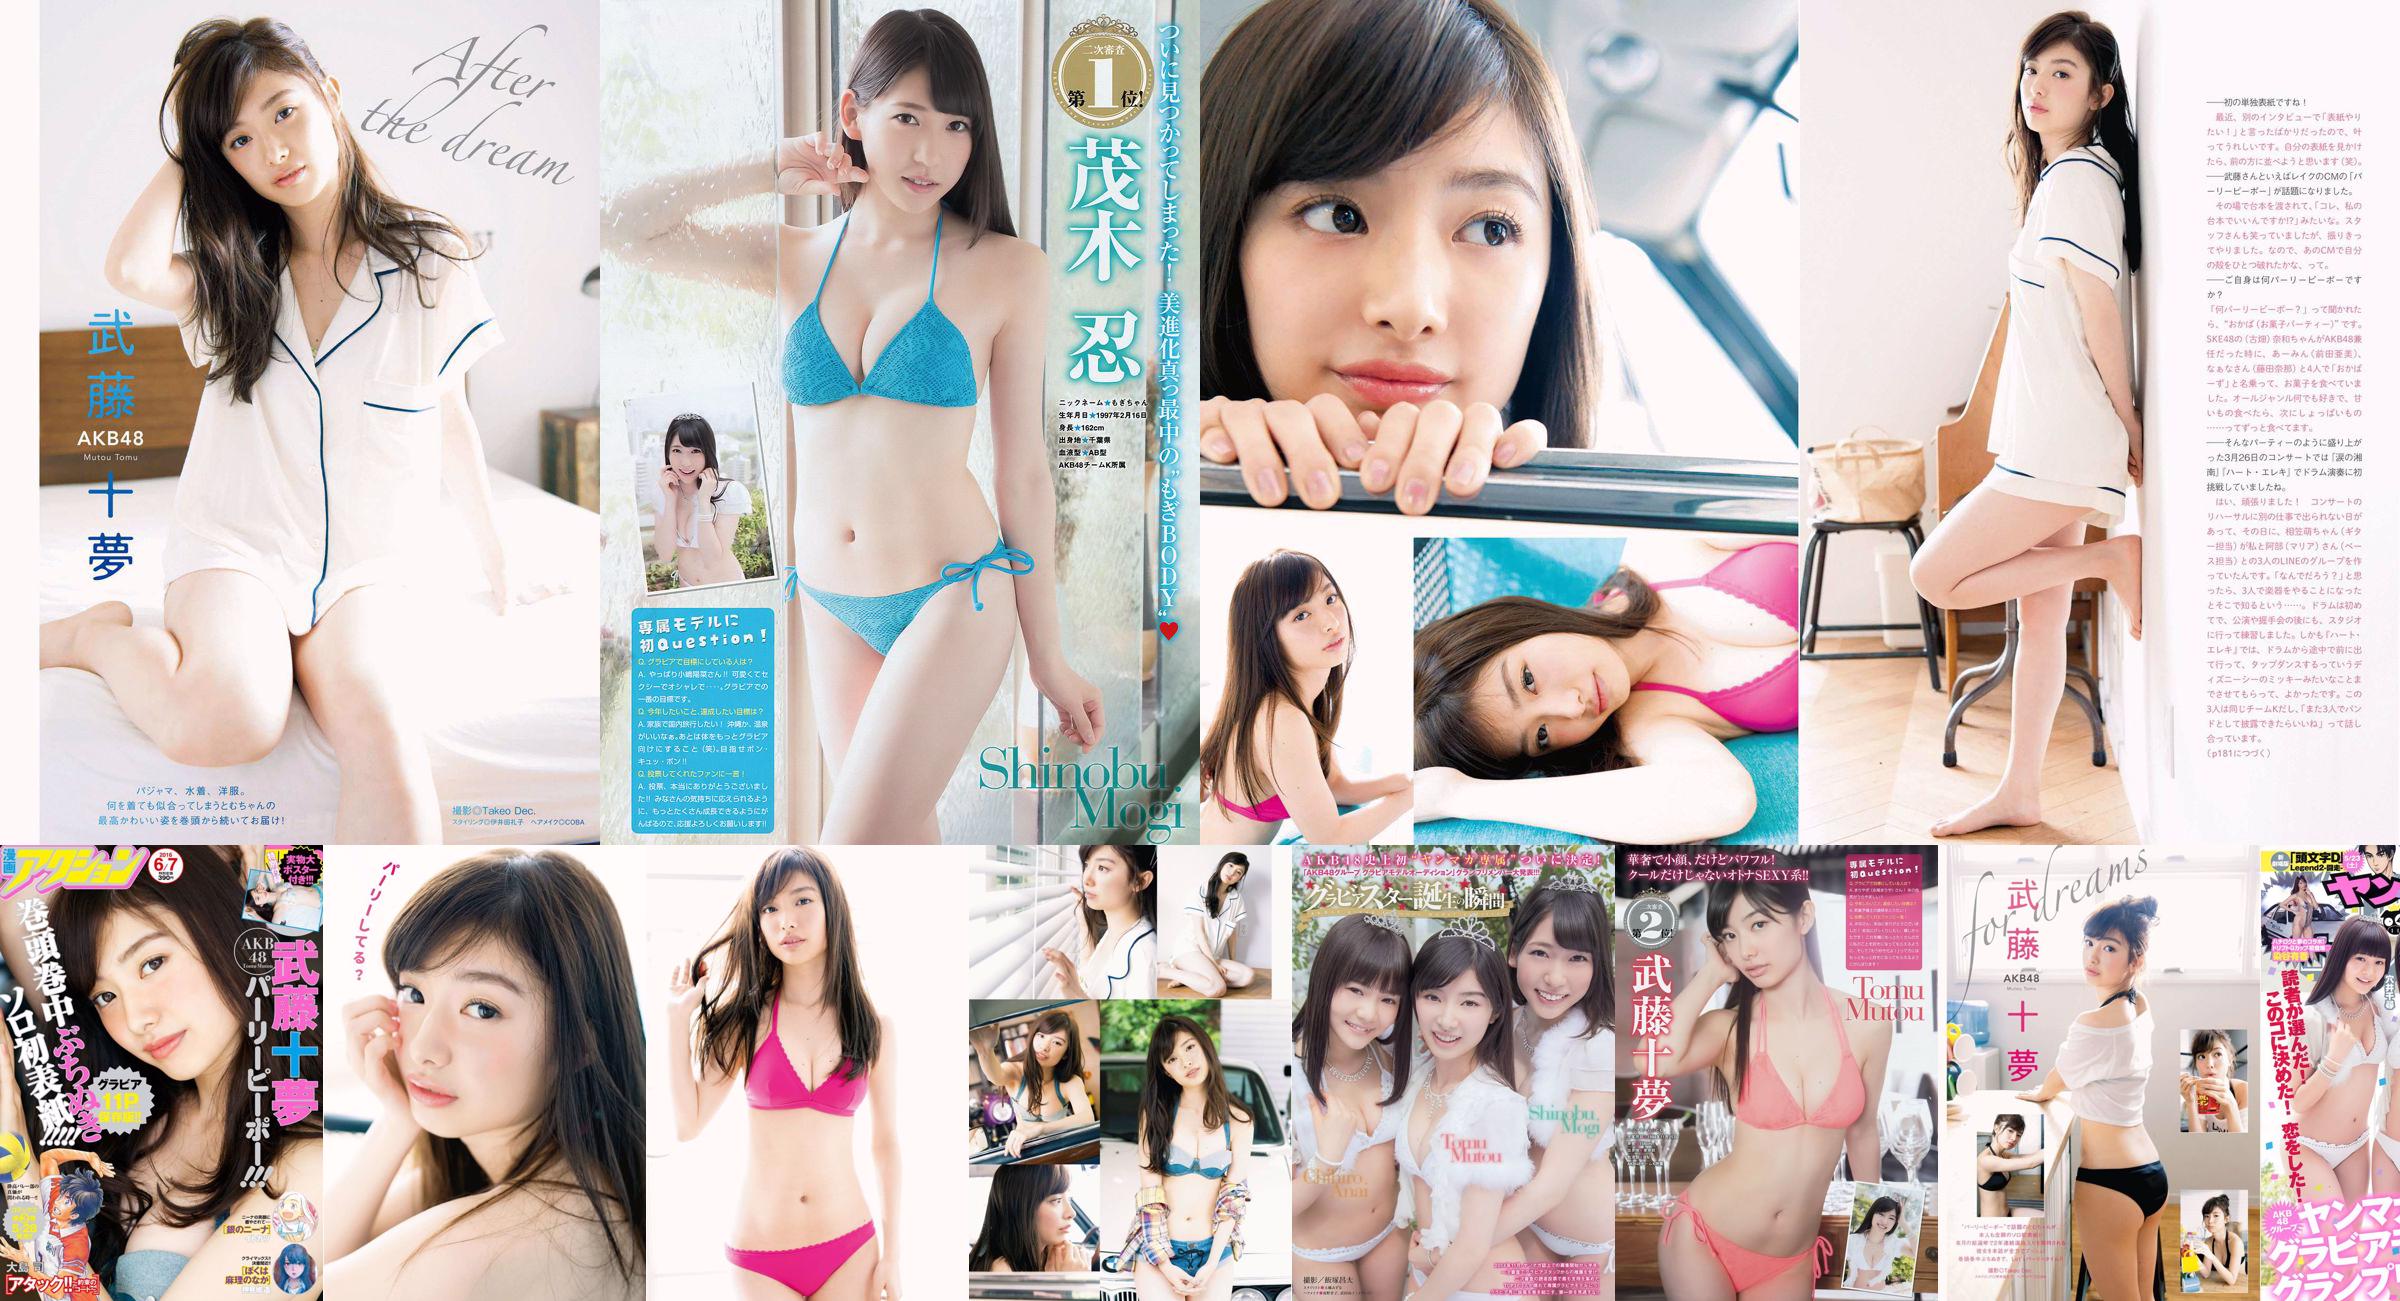 [Young Magazine] Tomu Muto Shinobu Mogi Chihiro Anai Erina Mano Yuka Someya 2015 No.25 Fotografia No.32d5e0 Pagina 1